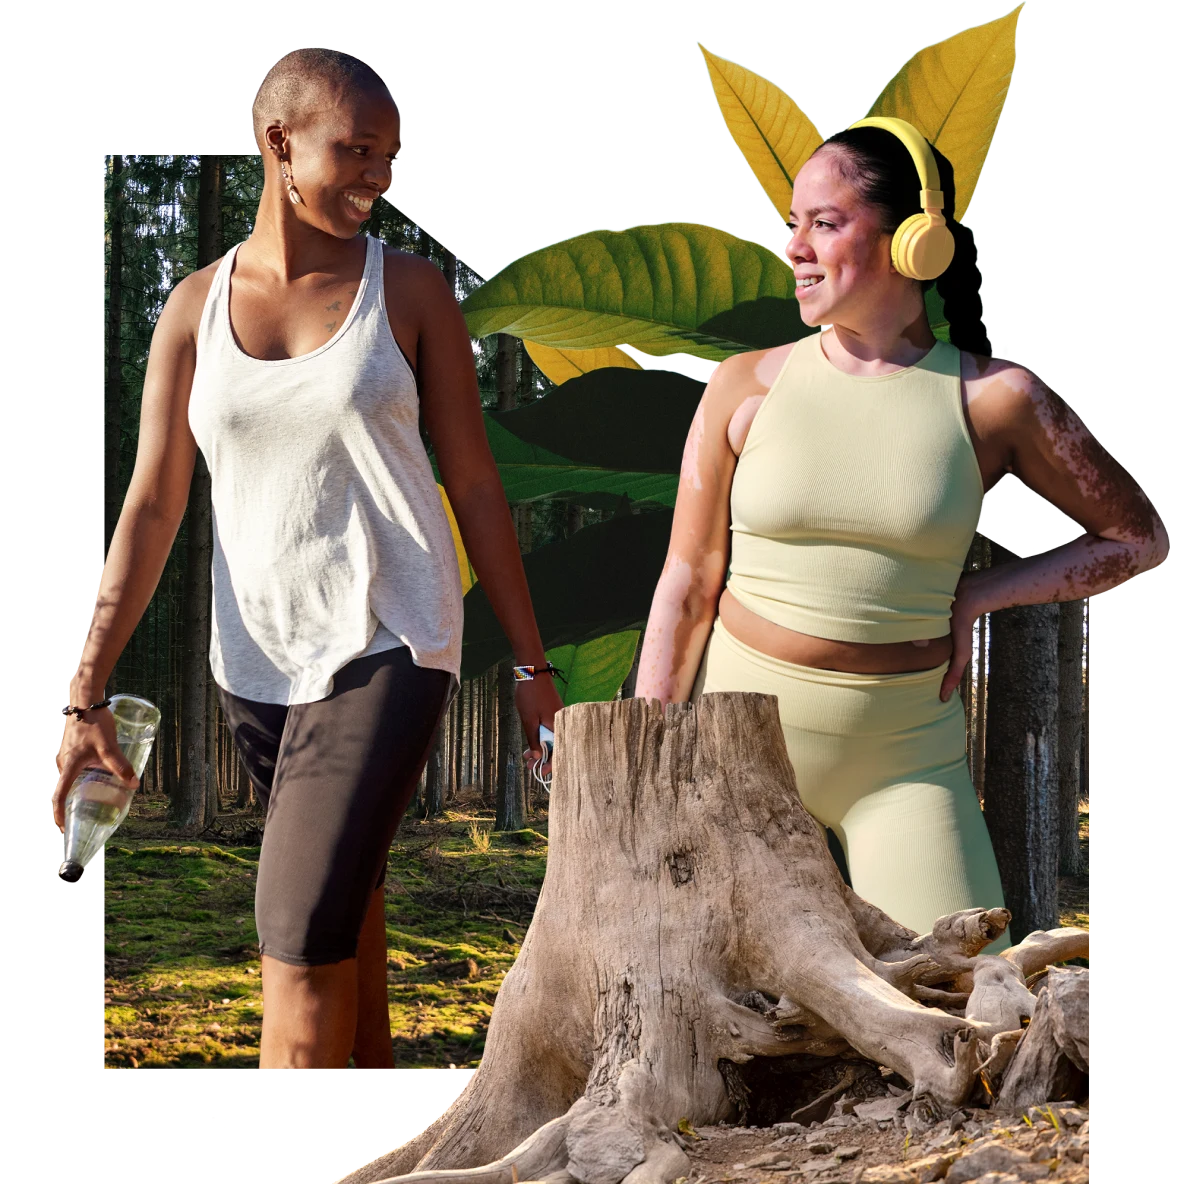 A sinistra, una donna nera sorridente che cammina vestita con abiti sportivi. A destra, una donna bianca con abbigliamento sportivo e le cuffie alle orecchie. In primo piano, il tronco tagliato di un albero. Sullo sfondo, un bosco.
